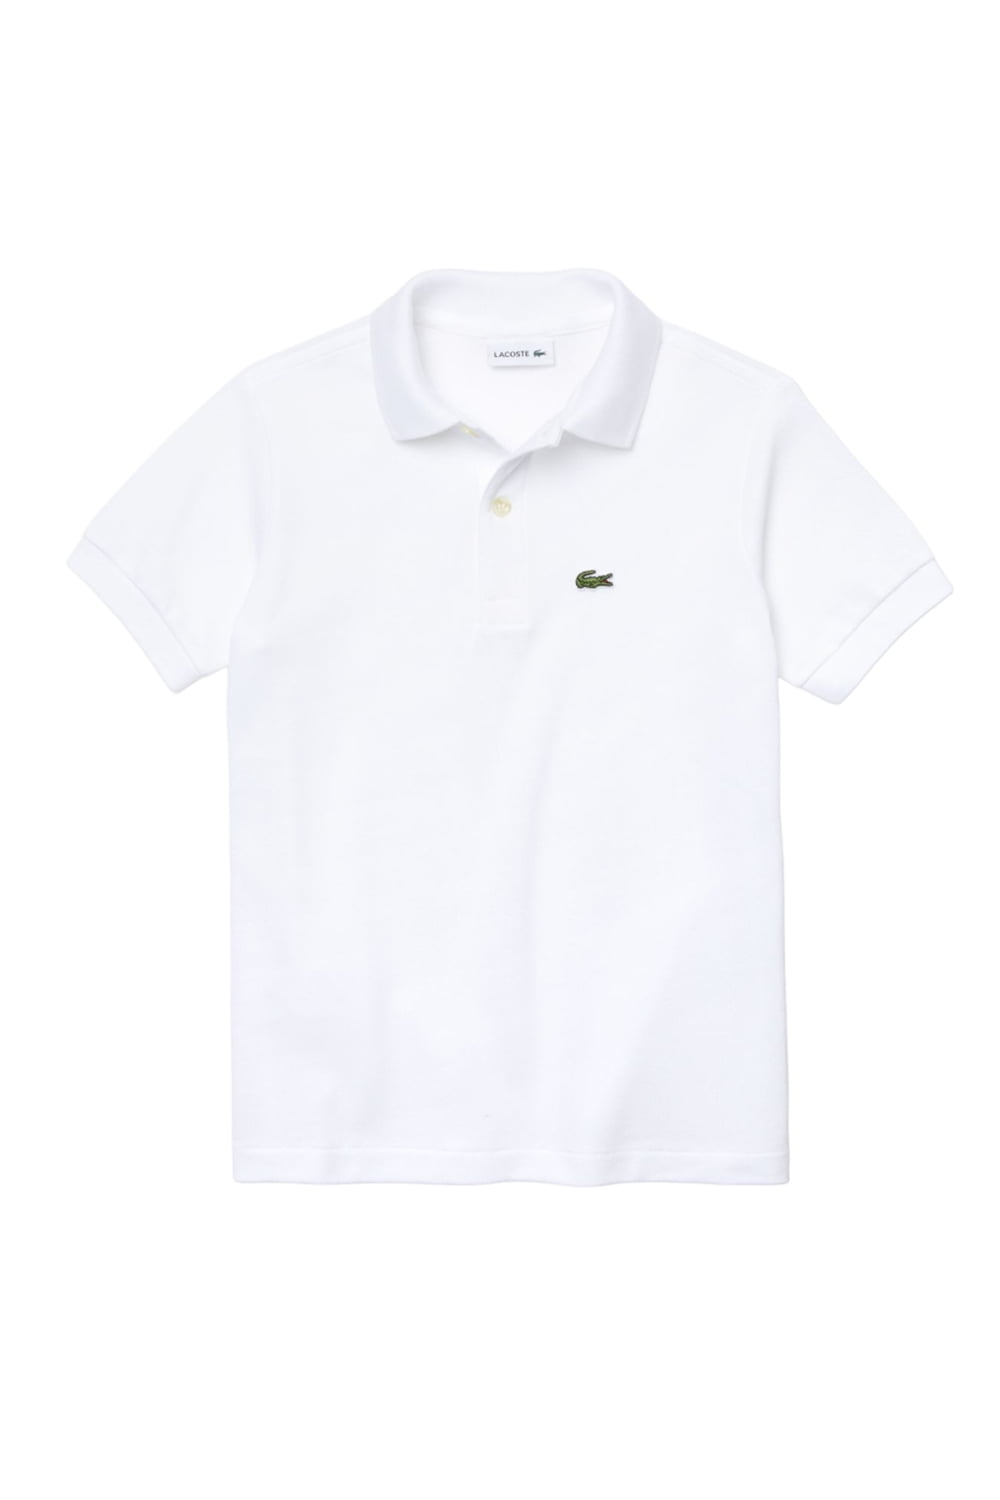 Παιδική Μπλούζα LACOSTE PJ2909-001 Άσπρο